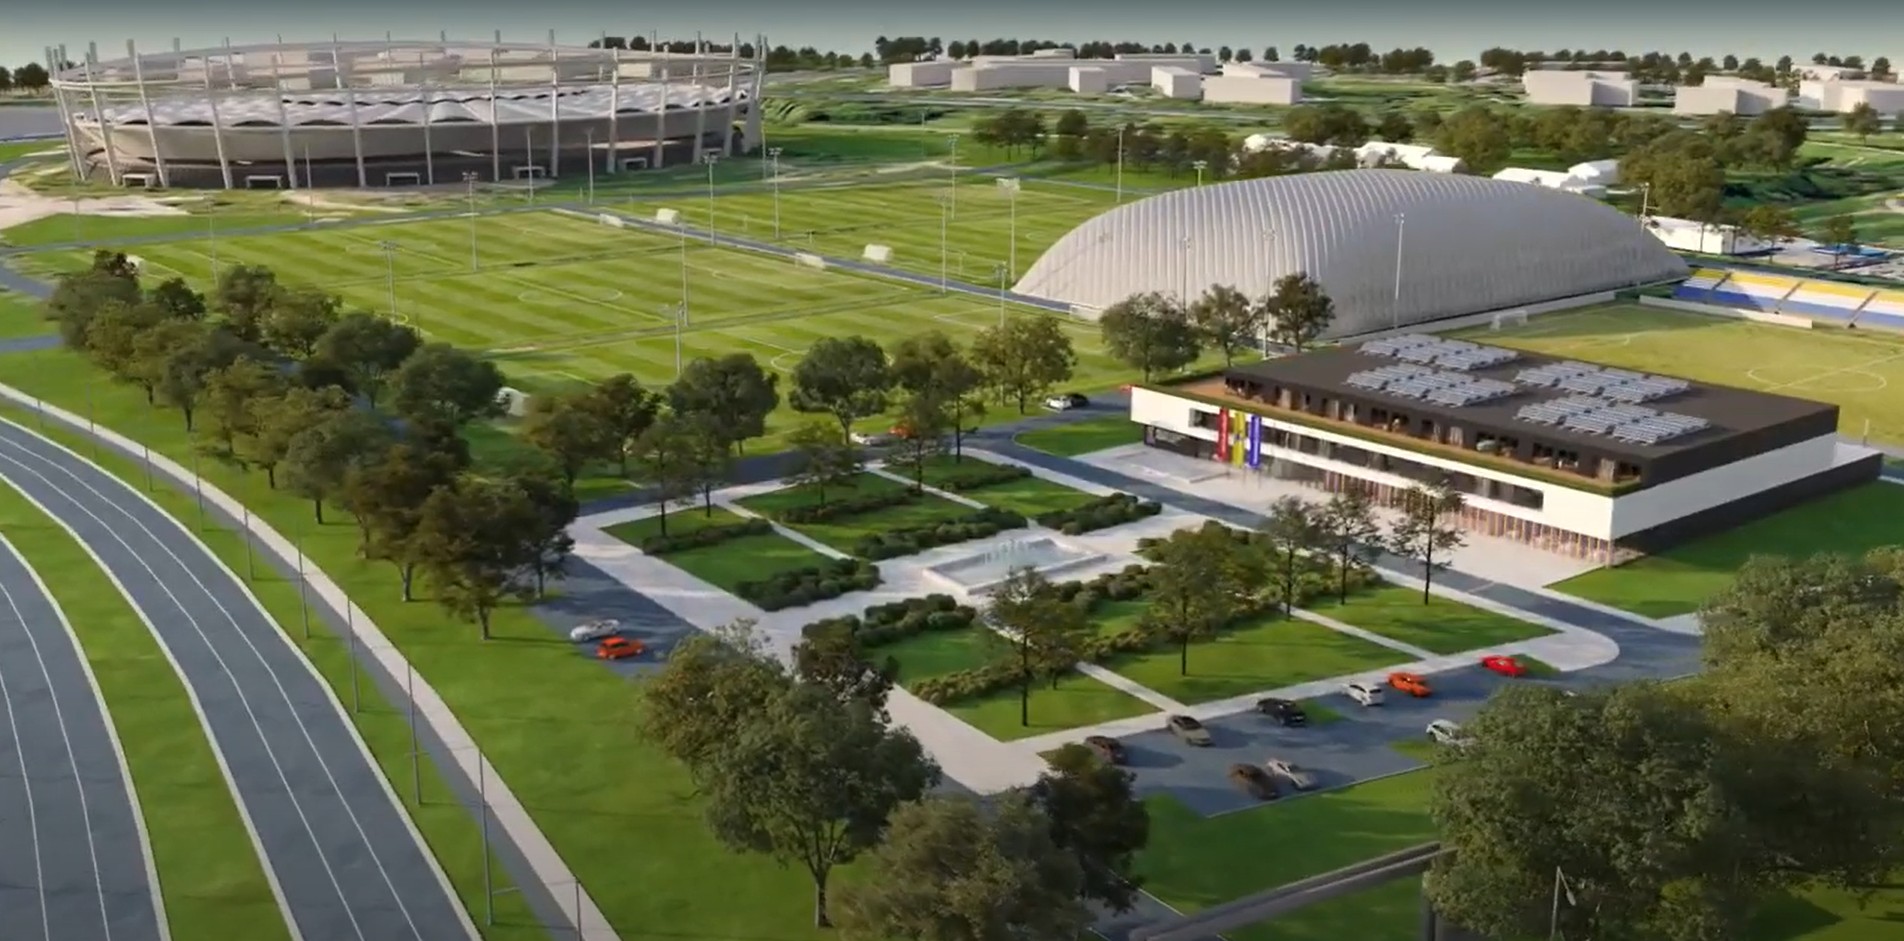 nowy stadion żużlowy w Lublinie - zmiana planu zagospodarowania przestrzennego